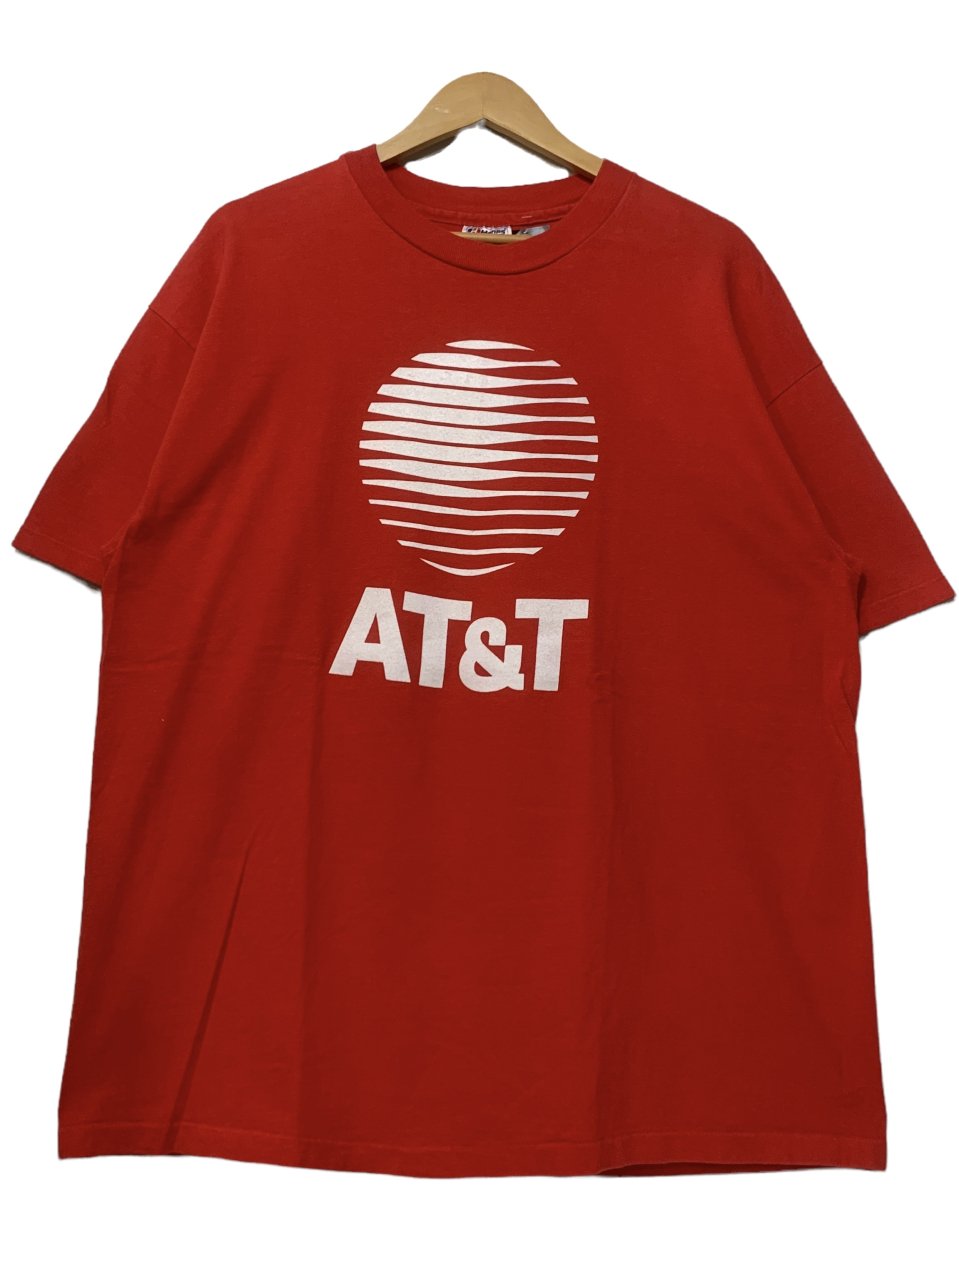 USA製 80s~90s AT&T Print S/S Tee 赤 XL エーティーアンドティー 半袖 Tシャツ 企業物 企業T Hanes レッド  古着 - NEWJOKE ONLINE STORE